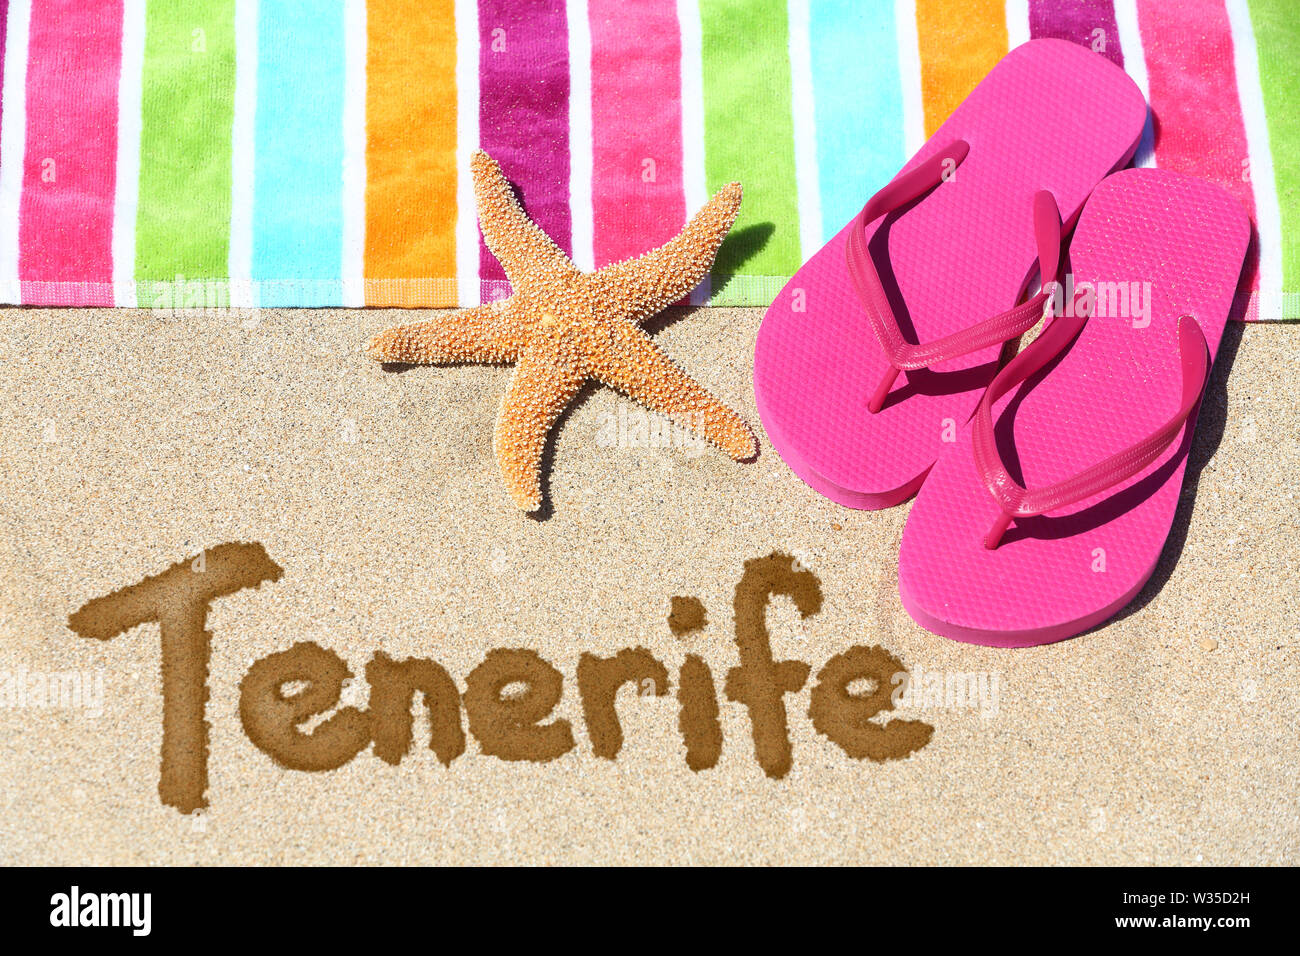 Teneriffa Strand reisen Hintergrund Konzept. Teneriffa in Sand geschrieben mit Wasser neben Strandtuch, Sommer Sandalen und Seesterne. Sommer und Sonne urlaub Urlaub auf den Kanarischen Inseln, Spanien. Stockfoto